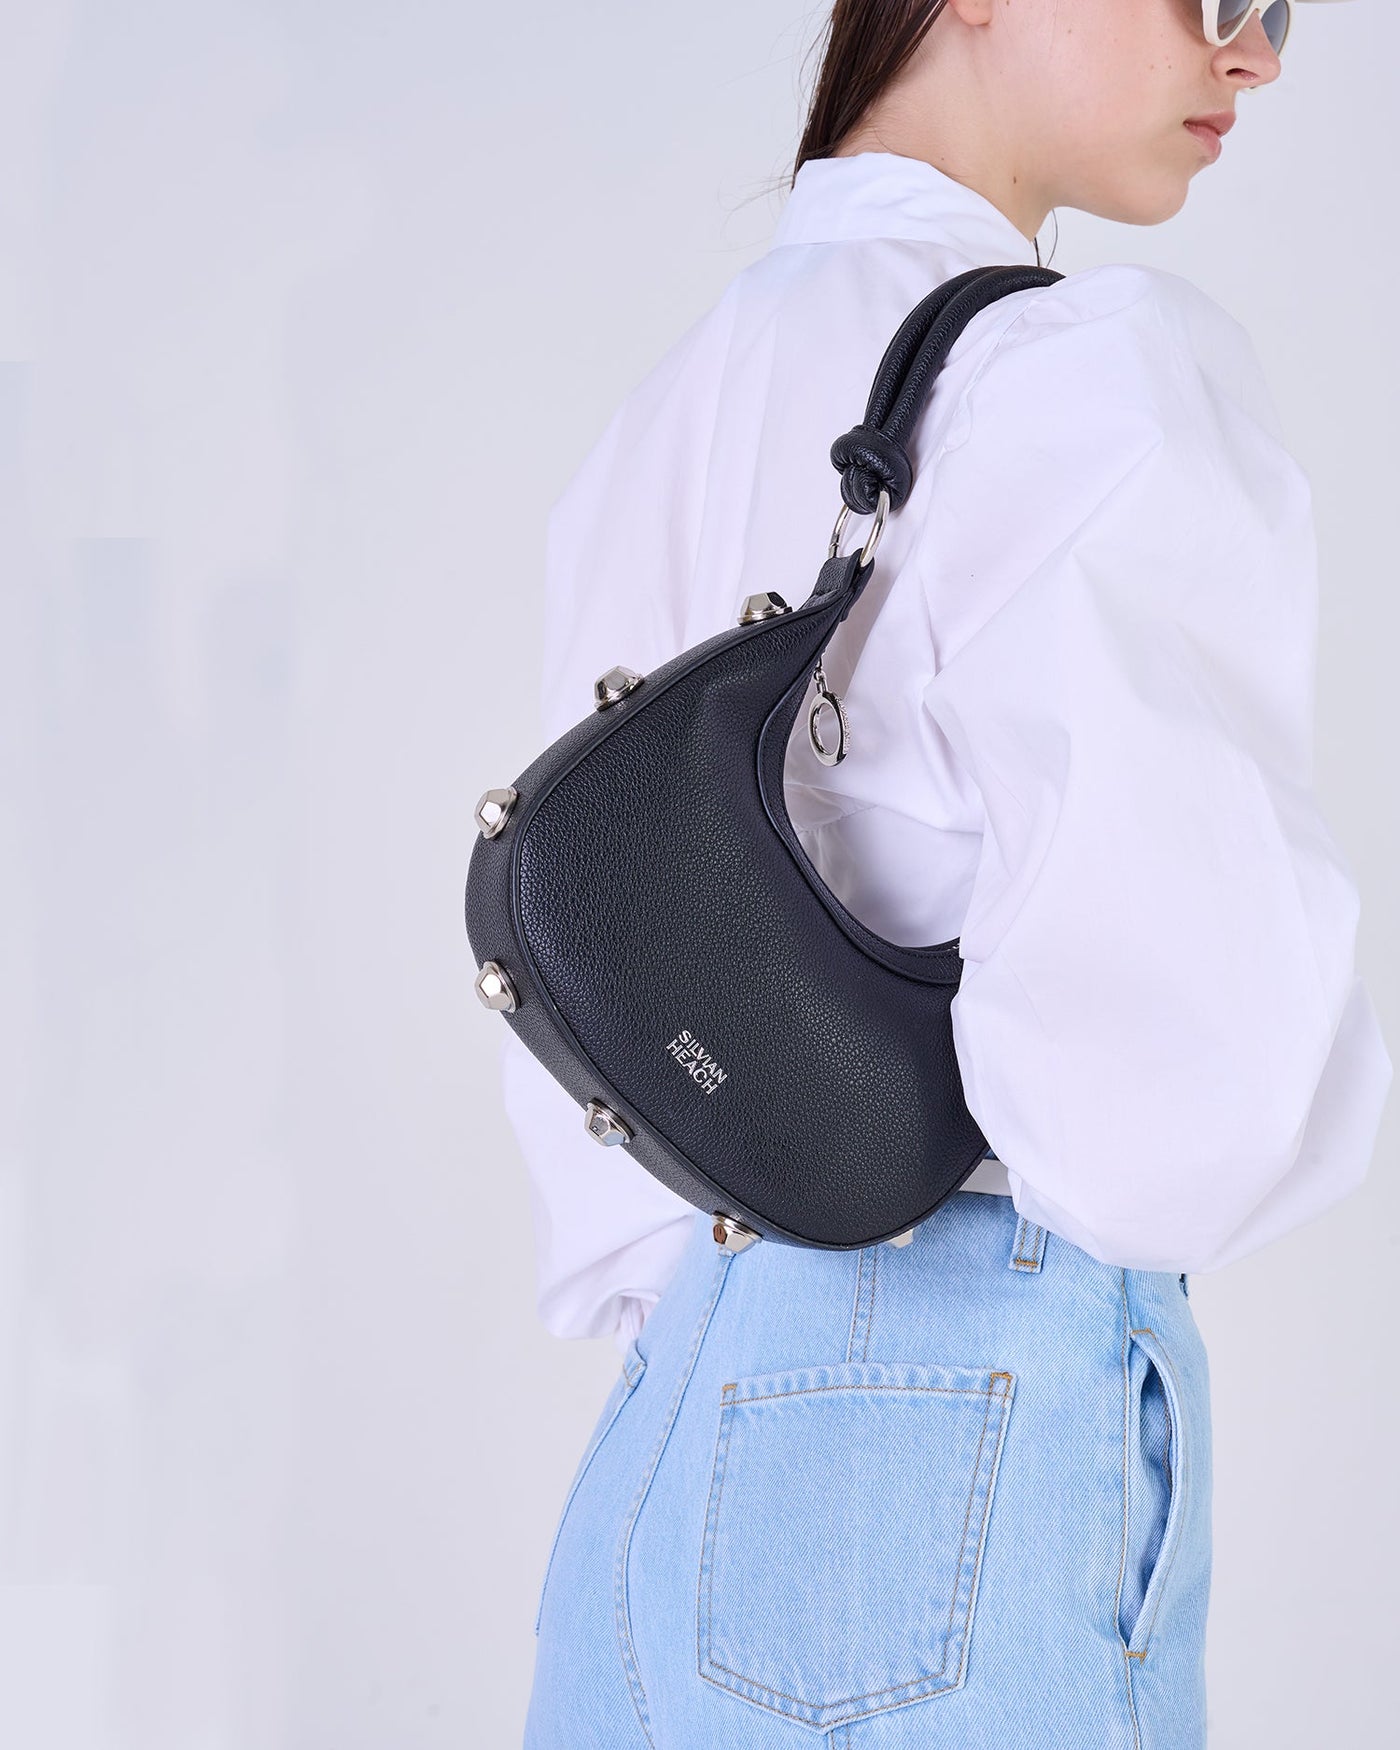 Black Handbag With Silver Studs & Shoulder Strap Detailing